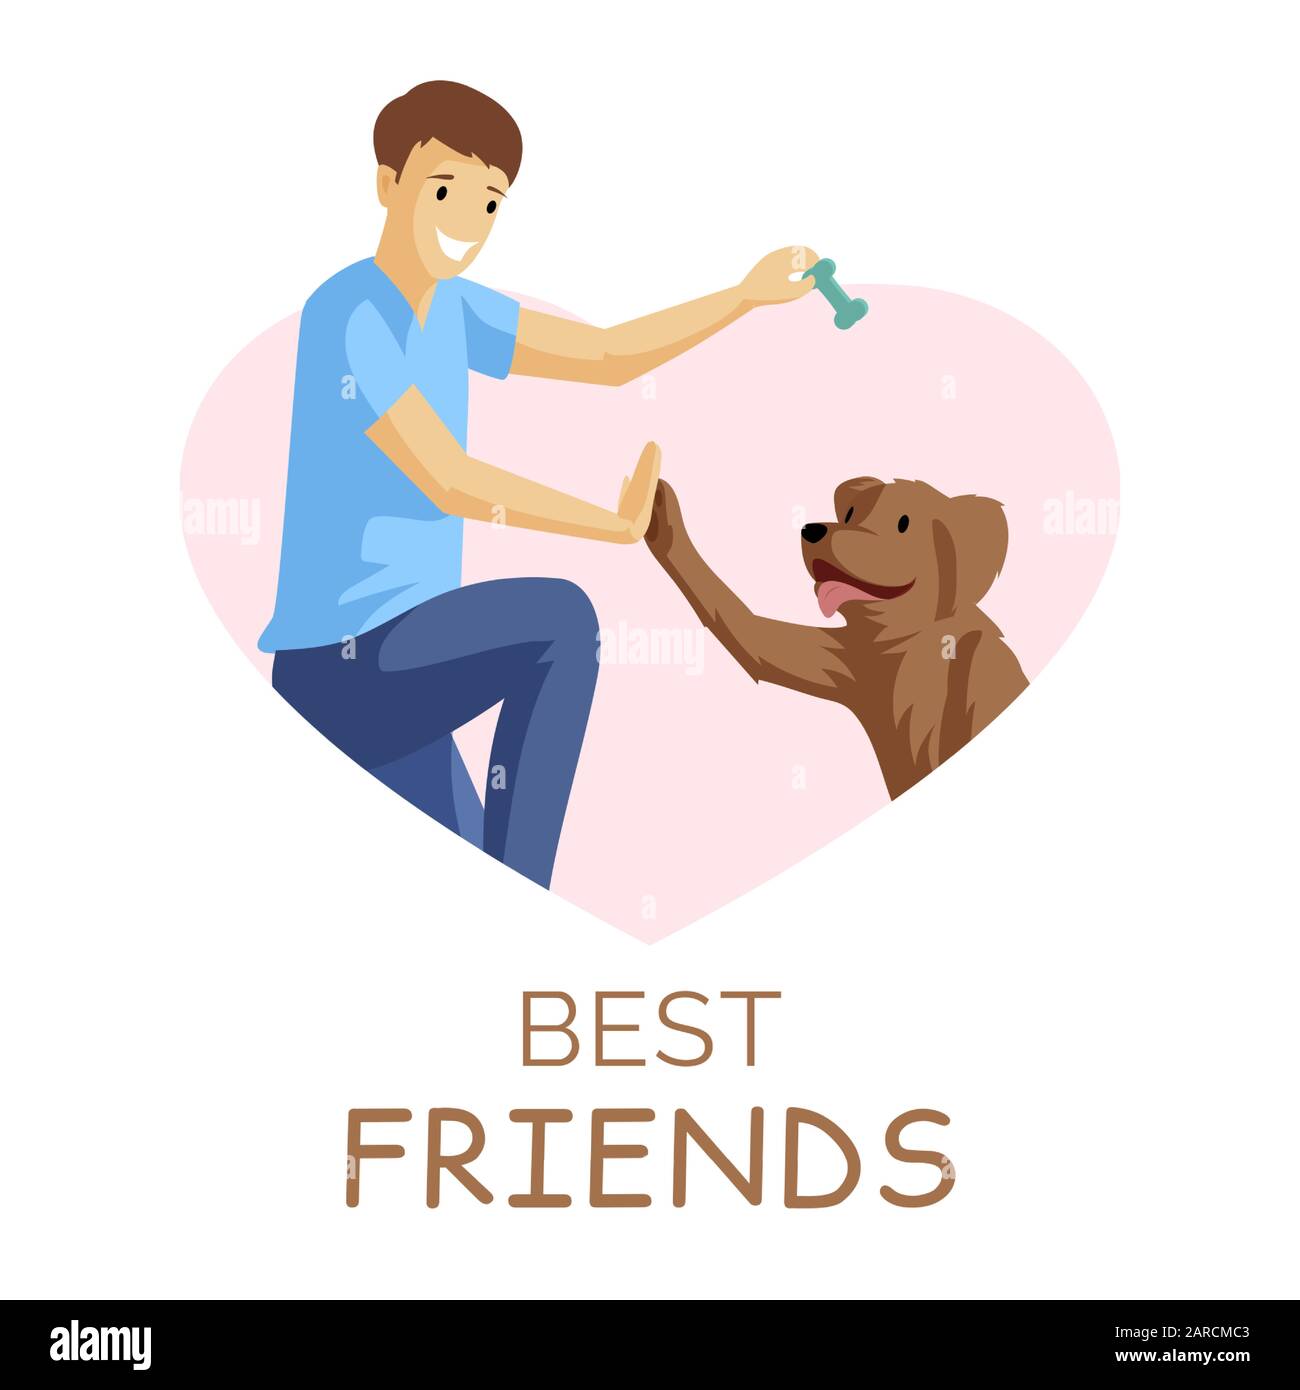 Illustration vectorielle plate BEST Friends. Guy et chien jouant ensemble  dans le cadre en forme de coeur. Émotions positives, amitié, jeune garçon  avec animal de compagnie dans le personnage de dessin animé